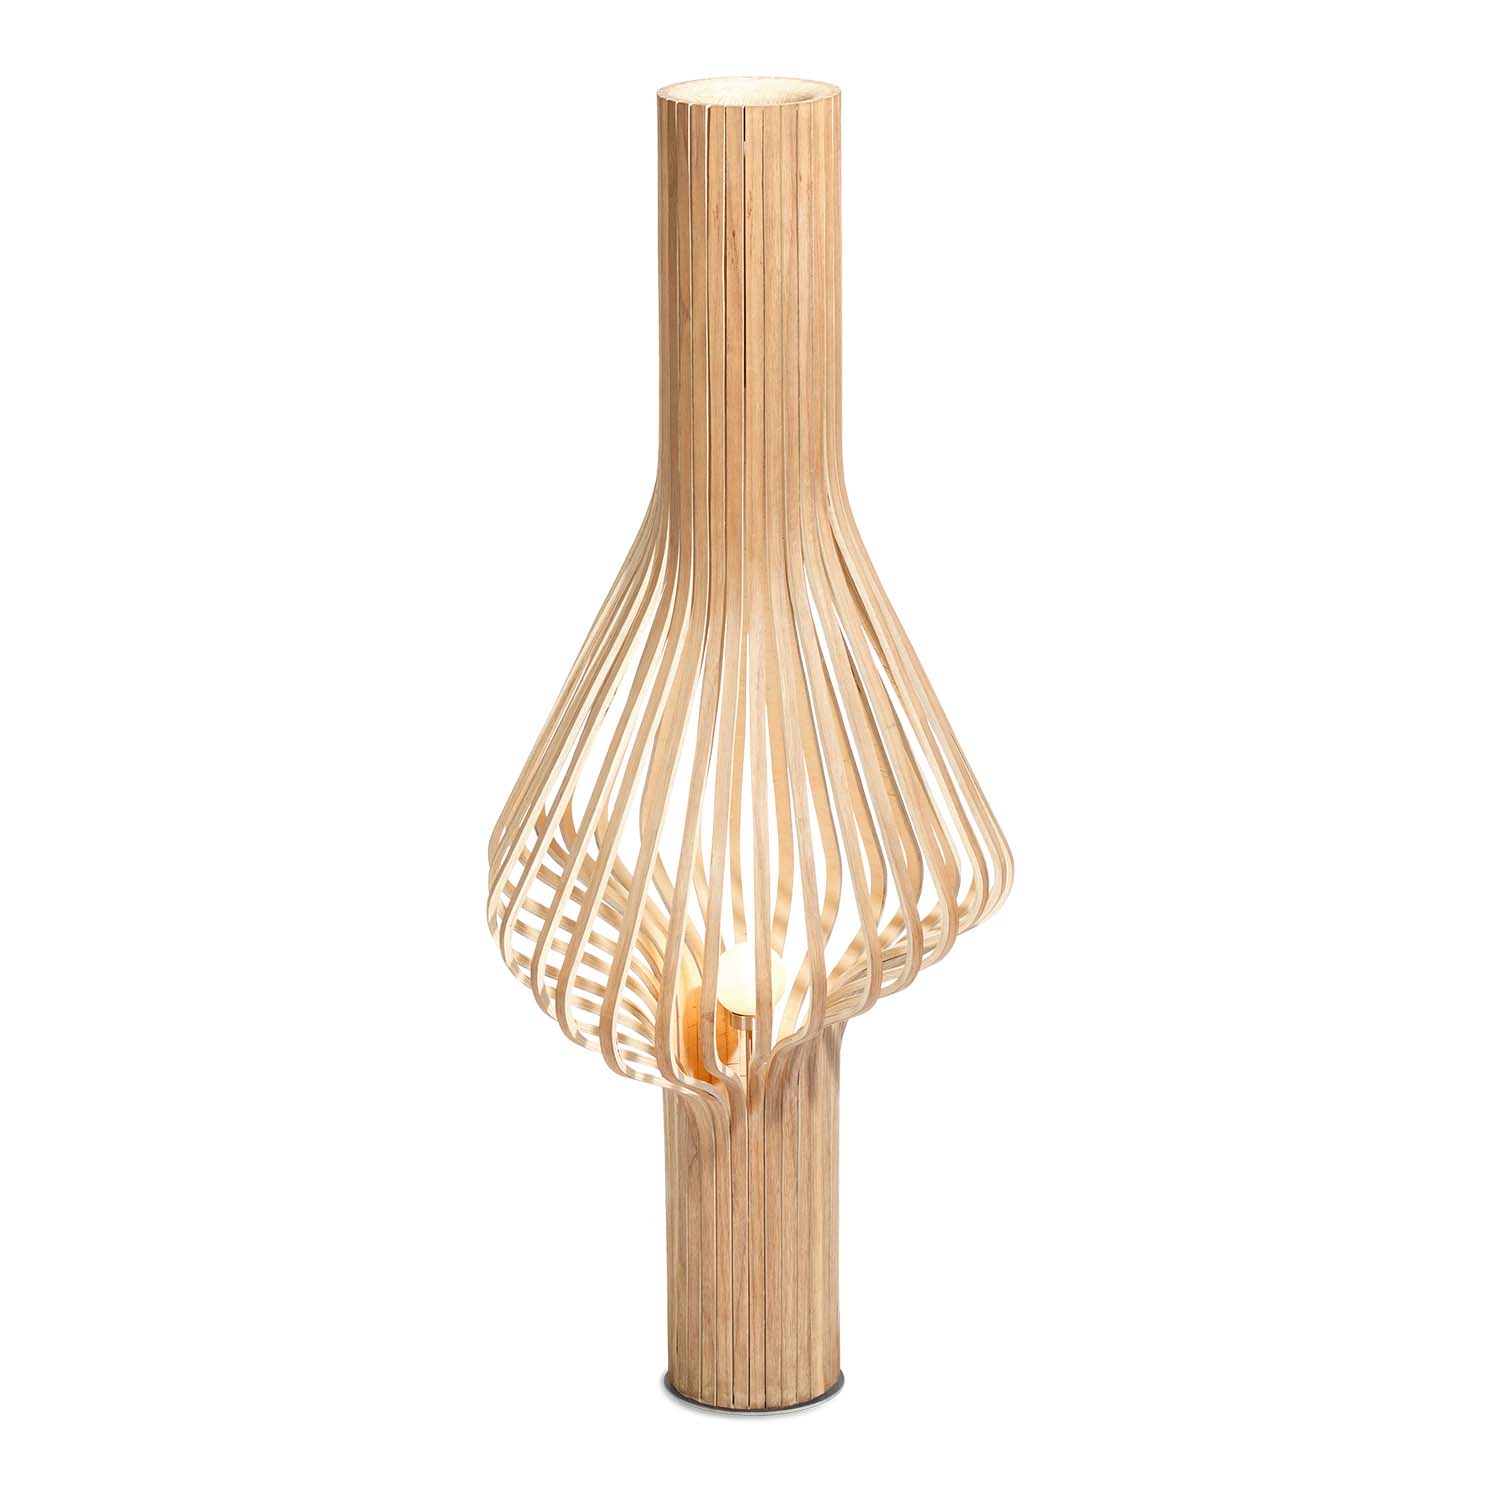 DIVA - Lampadaire en bois design et artisanal, fabriqué à la main